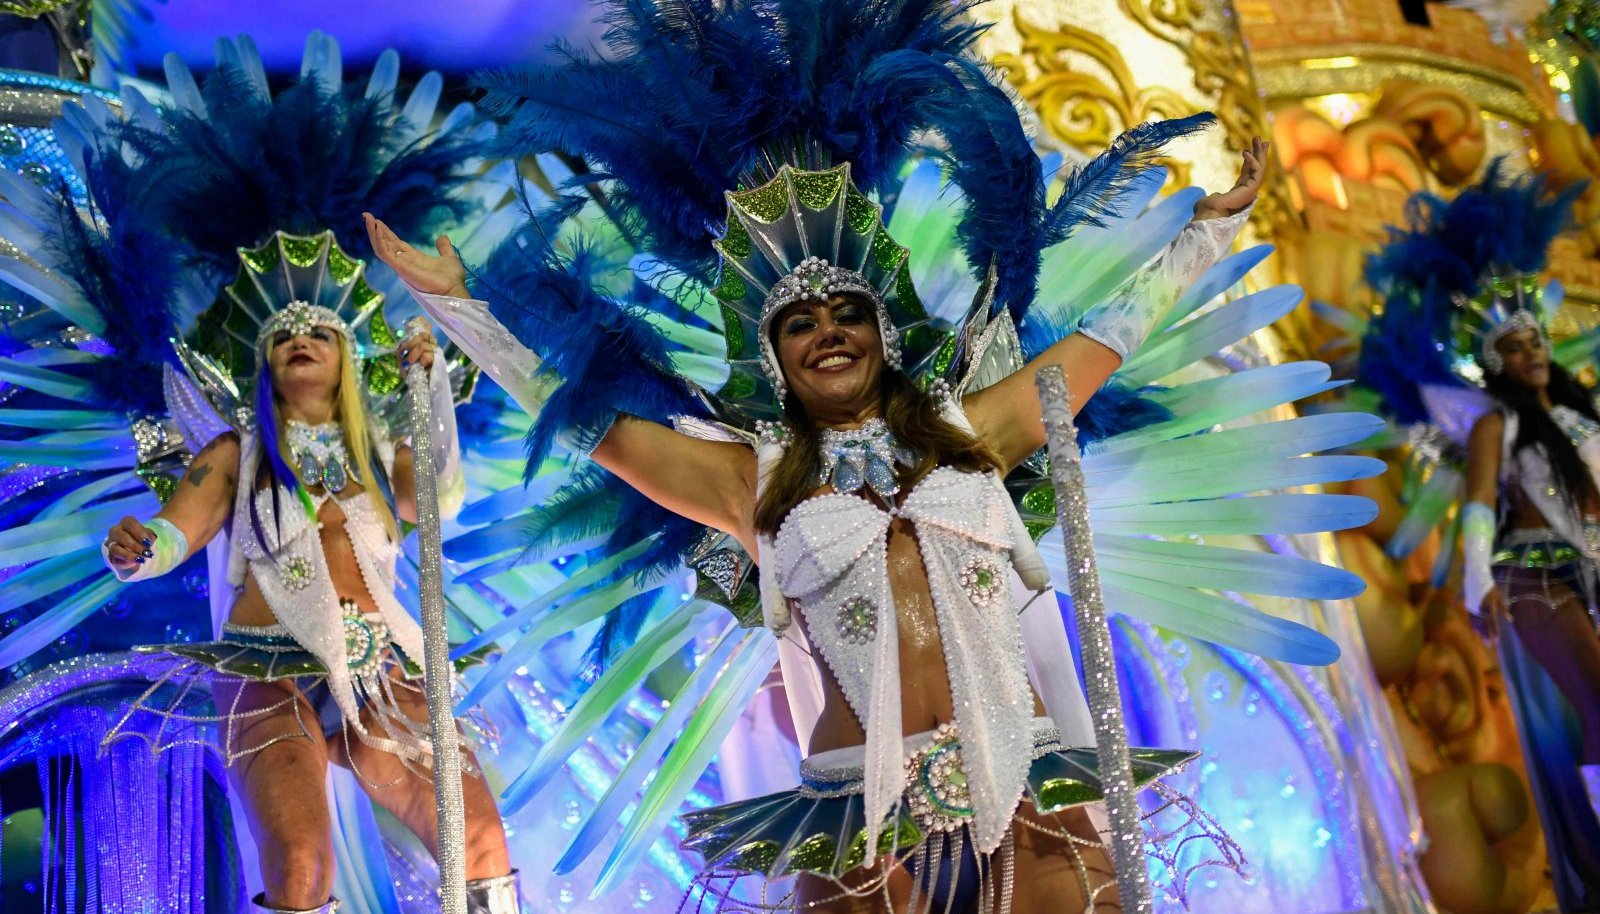 Звезды карнавала. Бразильский карнавал в Рио-де-Жанейро. Карнавал в Рио-де-Жанейро 2022. Карнавал в Рио-де-Жанейро (бразильский карнавал). Бразилия фестиваль Рио де Жанейро 2021.